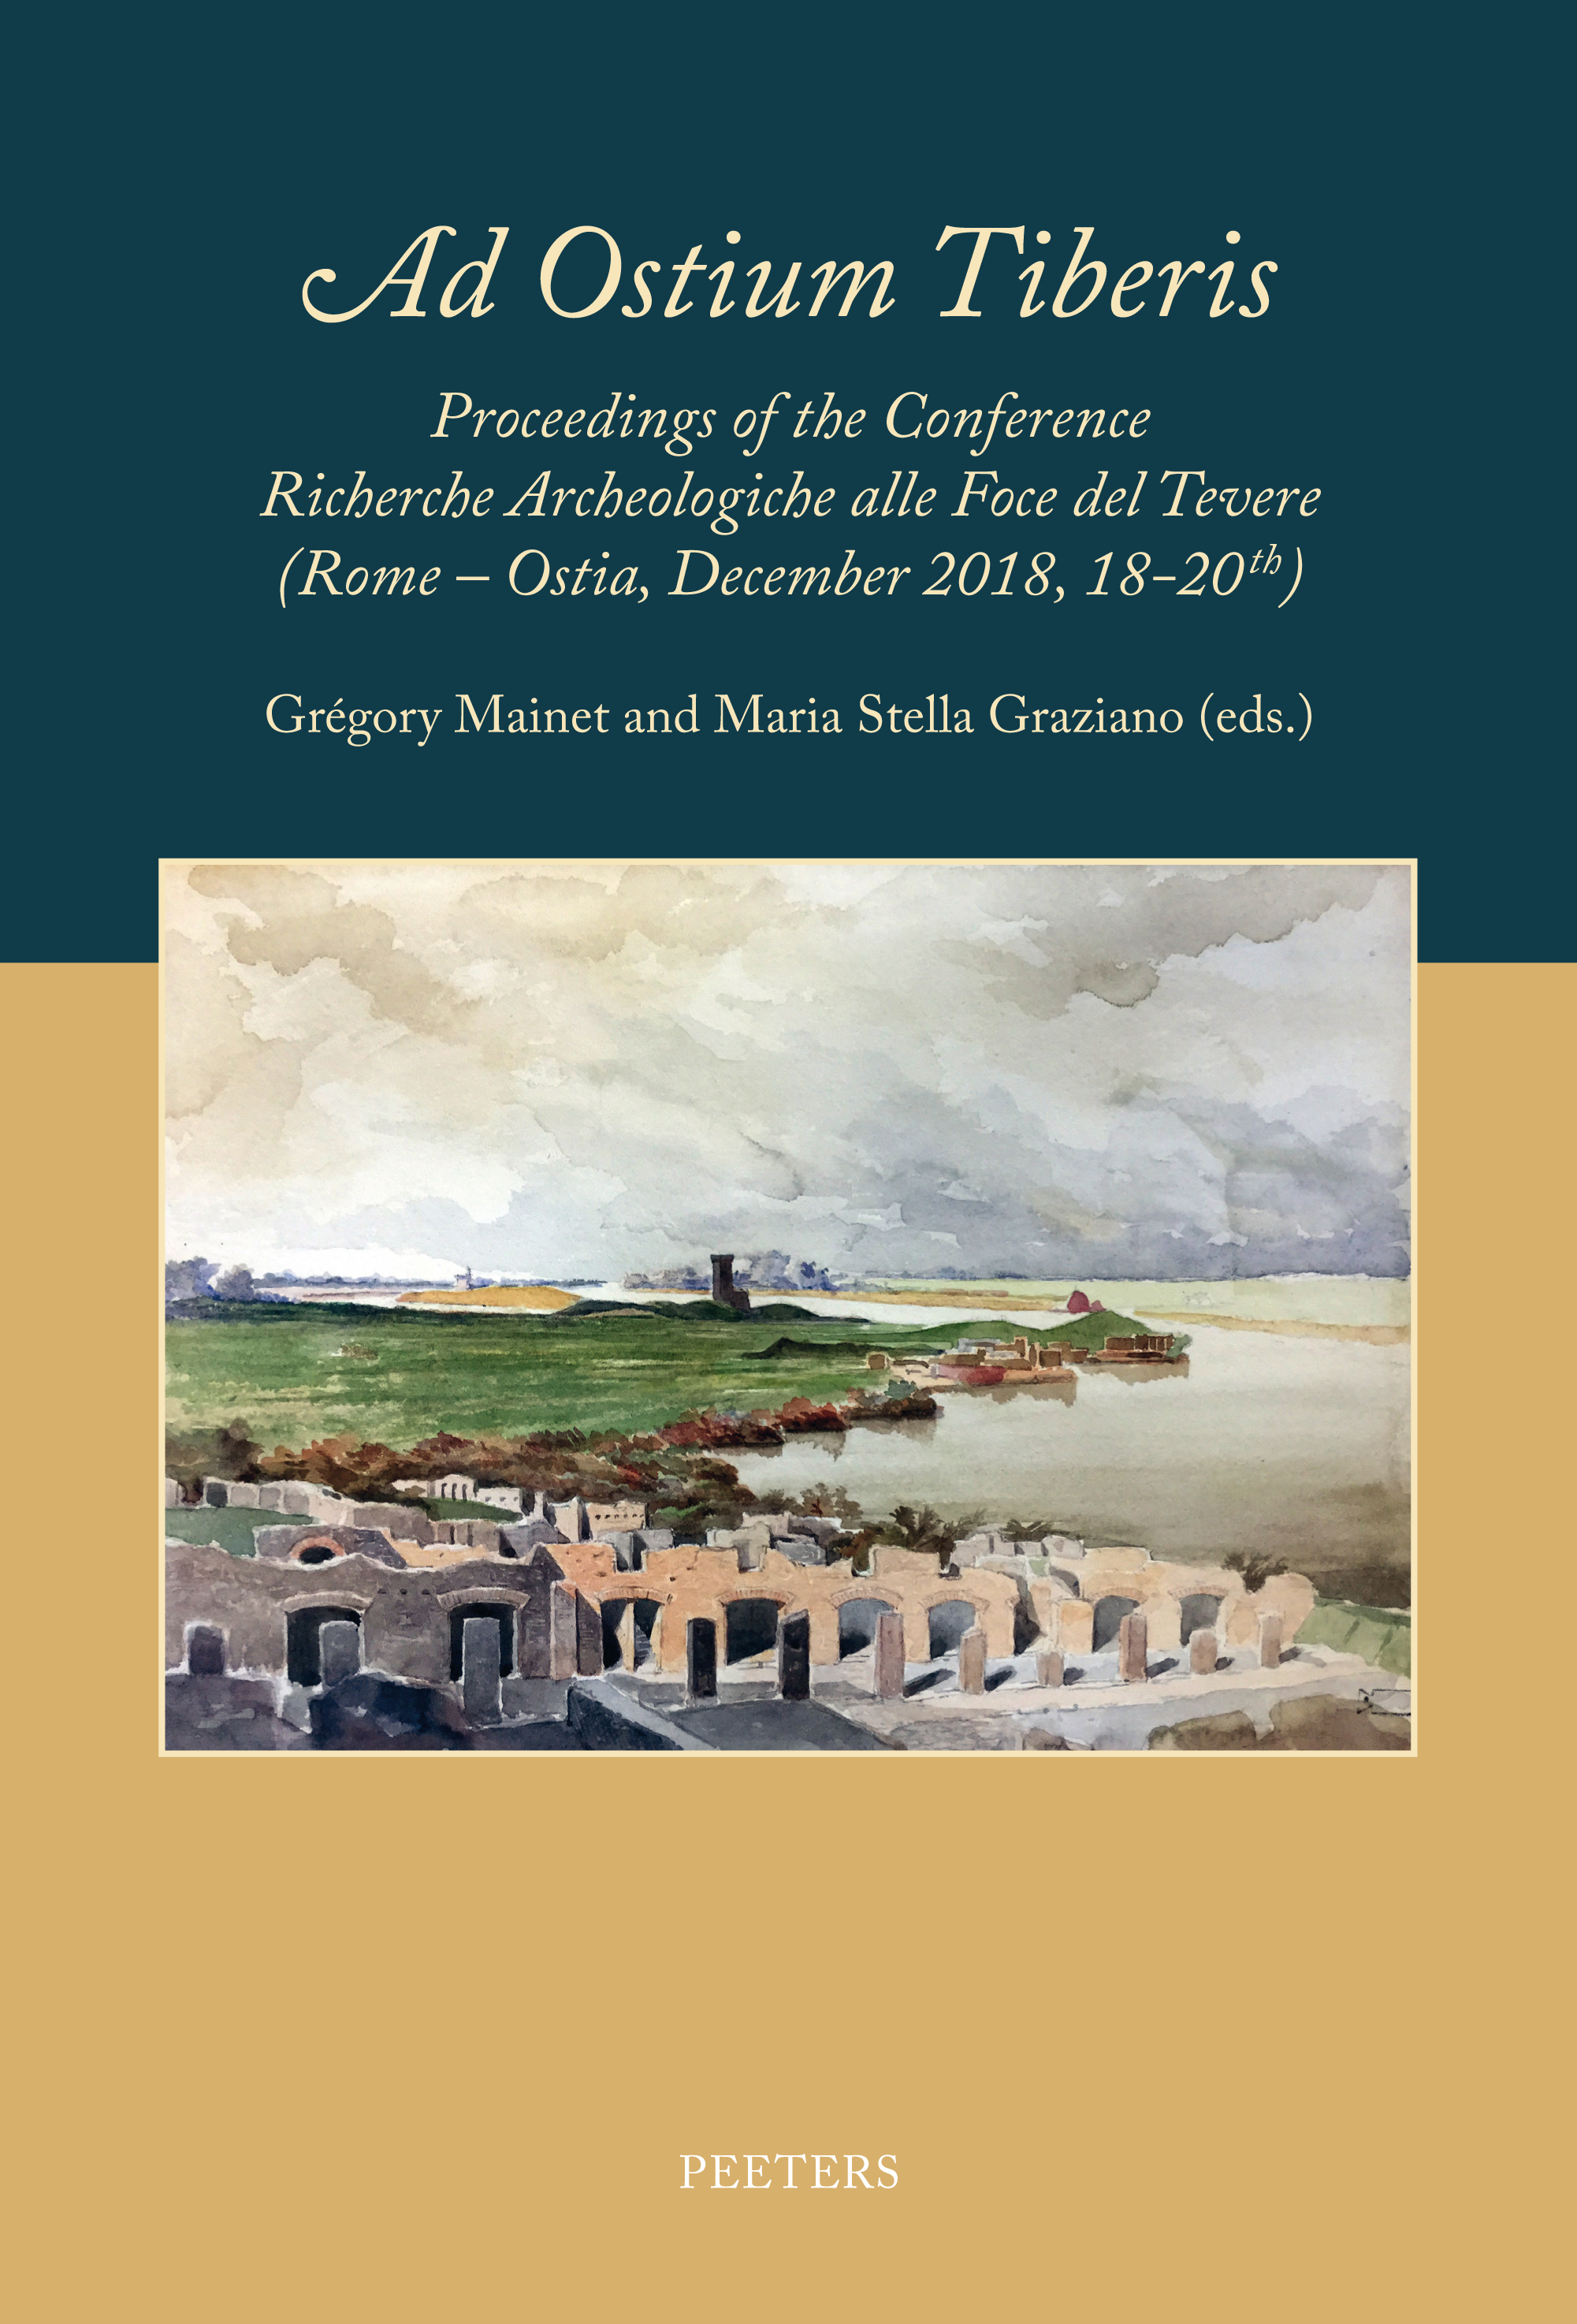 "Ad Ostium Tiberis". Proceedings of the Conference Ricerche Archeologiche alla Foce del Tevere (Rome - Ostia, December 2018, 18-20th)